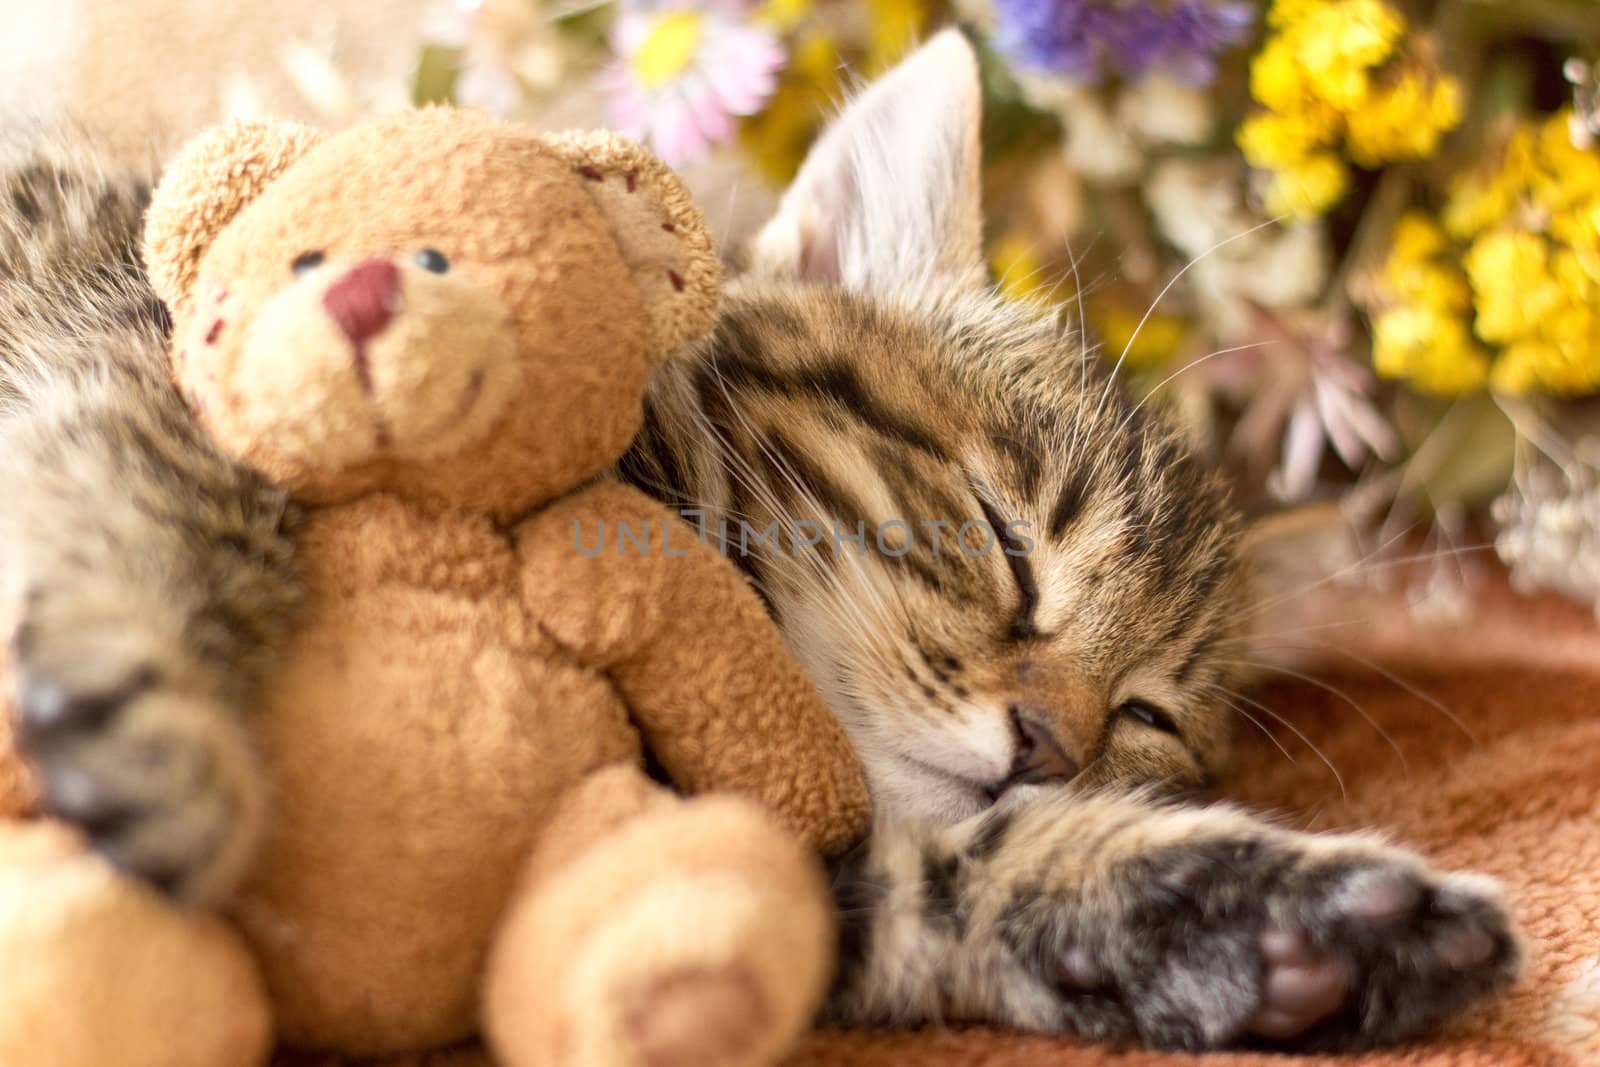 Kitten and teddy bear